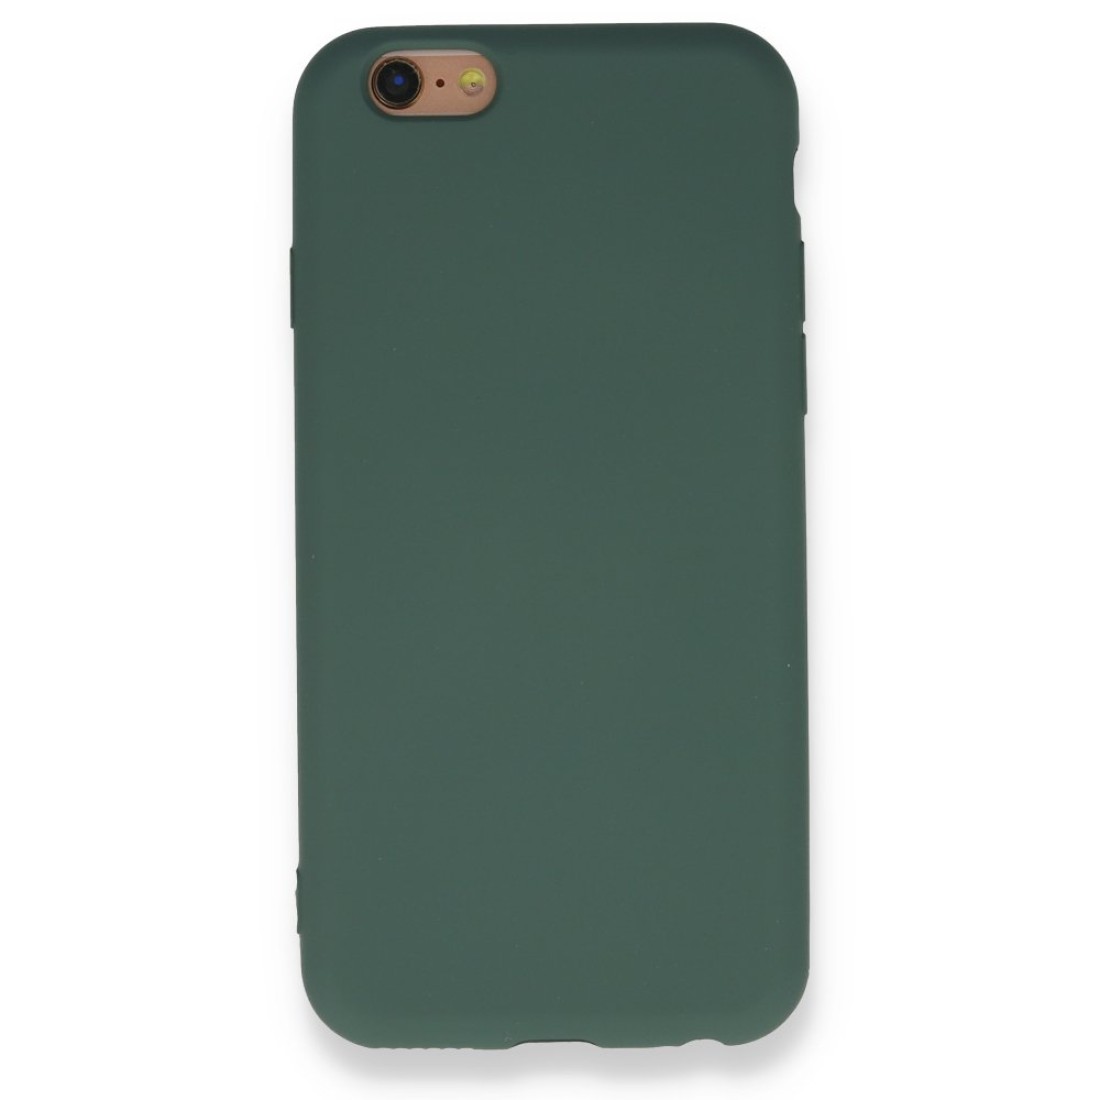 Apple iPhone 6 Kılıf Nano içi Kadife  Silikon - Koyu Yeşil